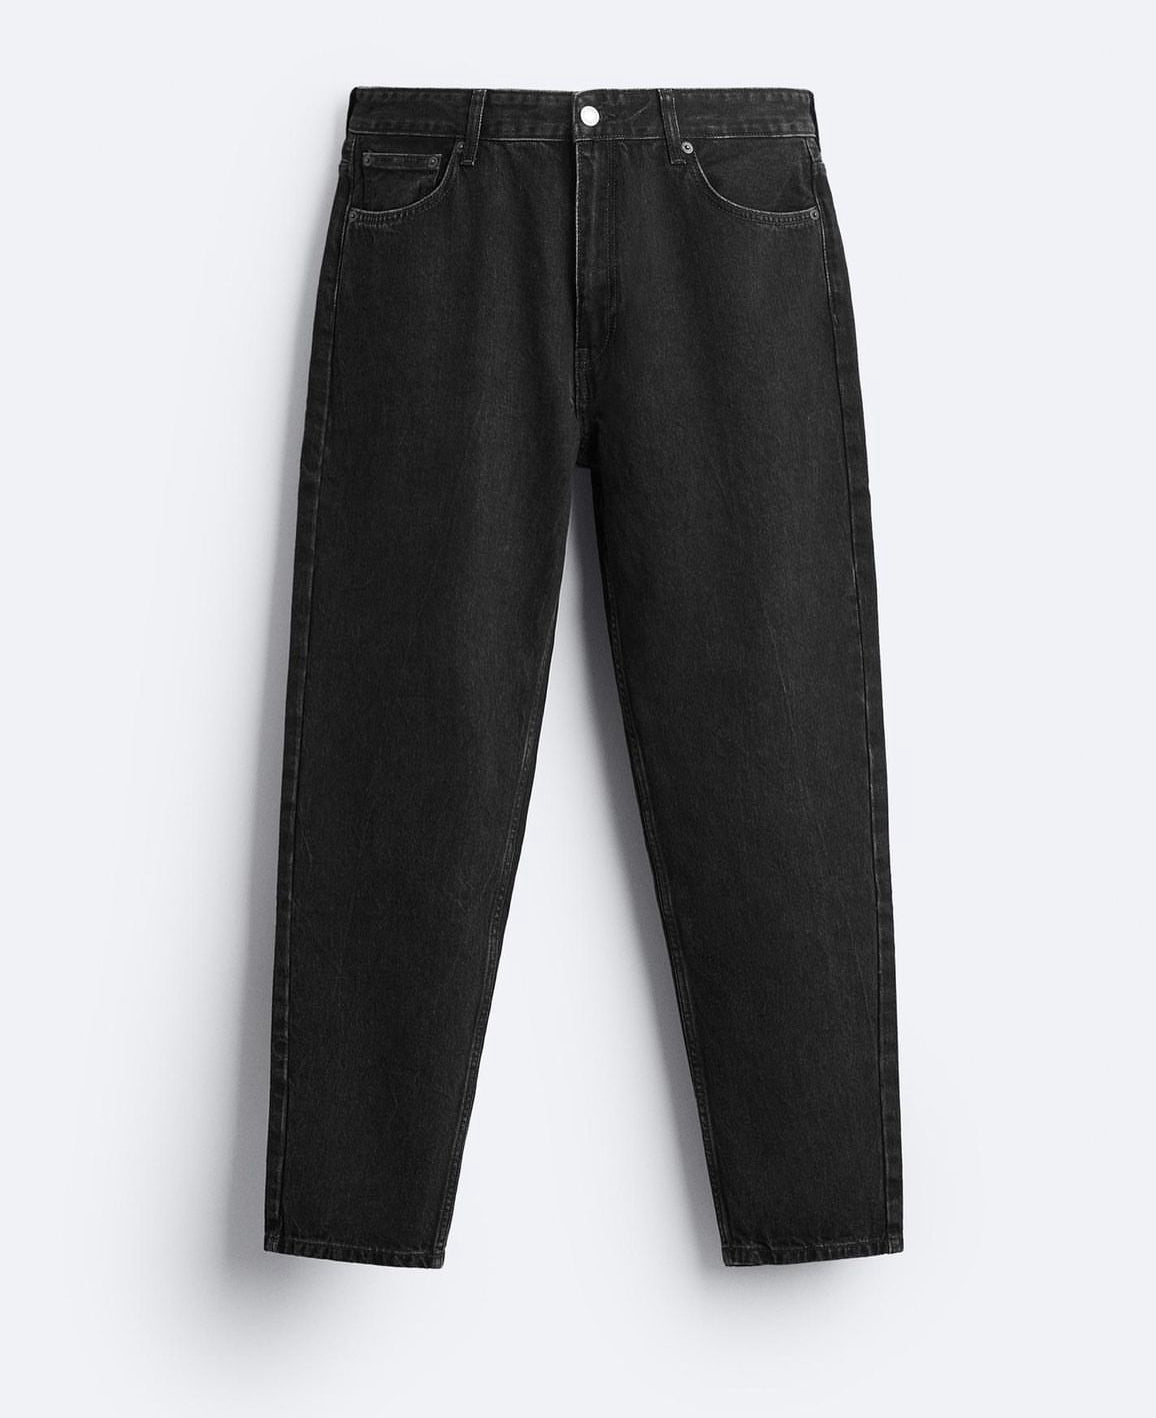 Zara slim fit jeans in black